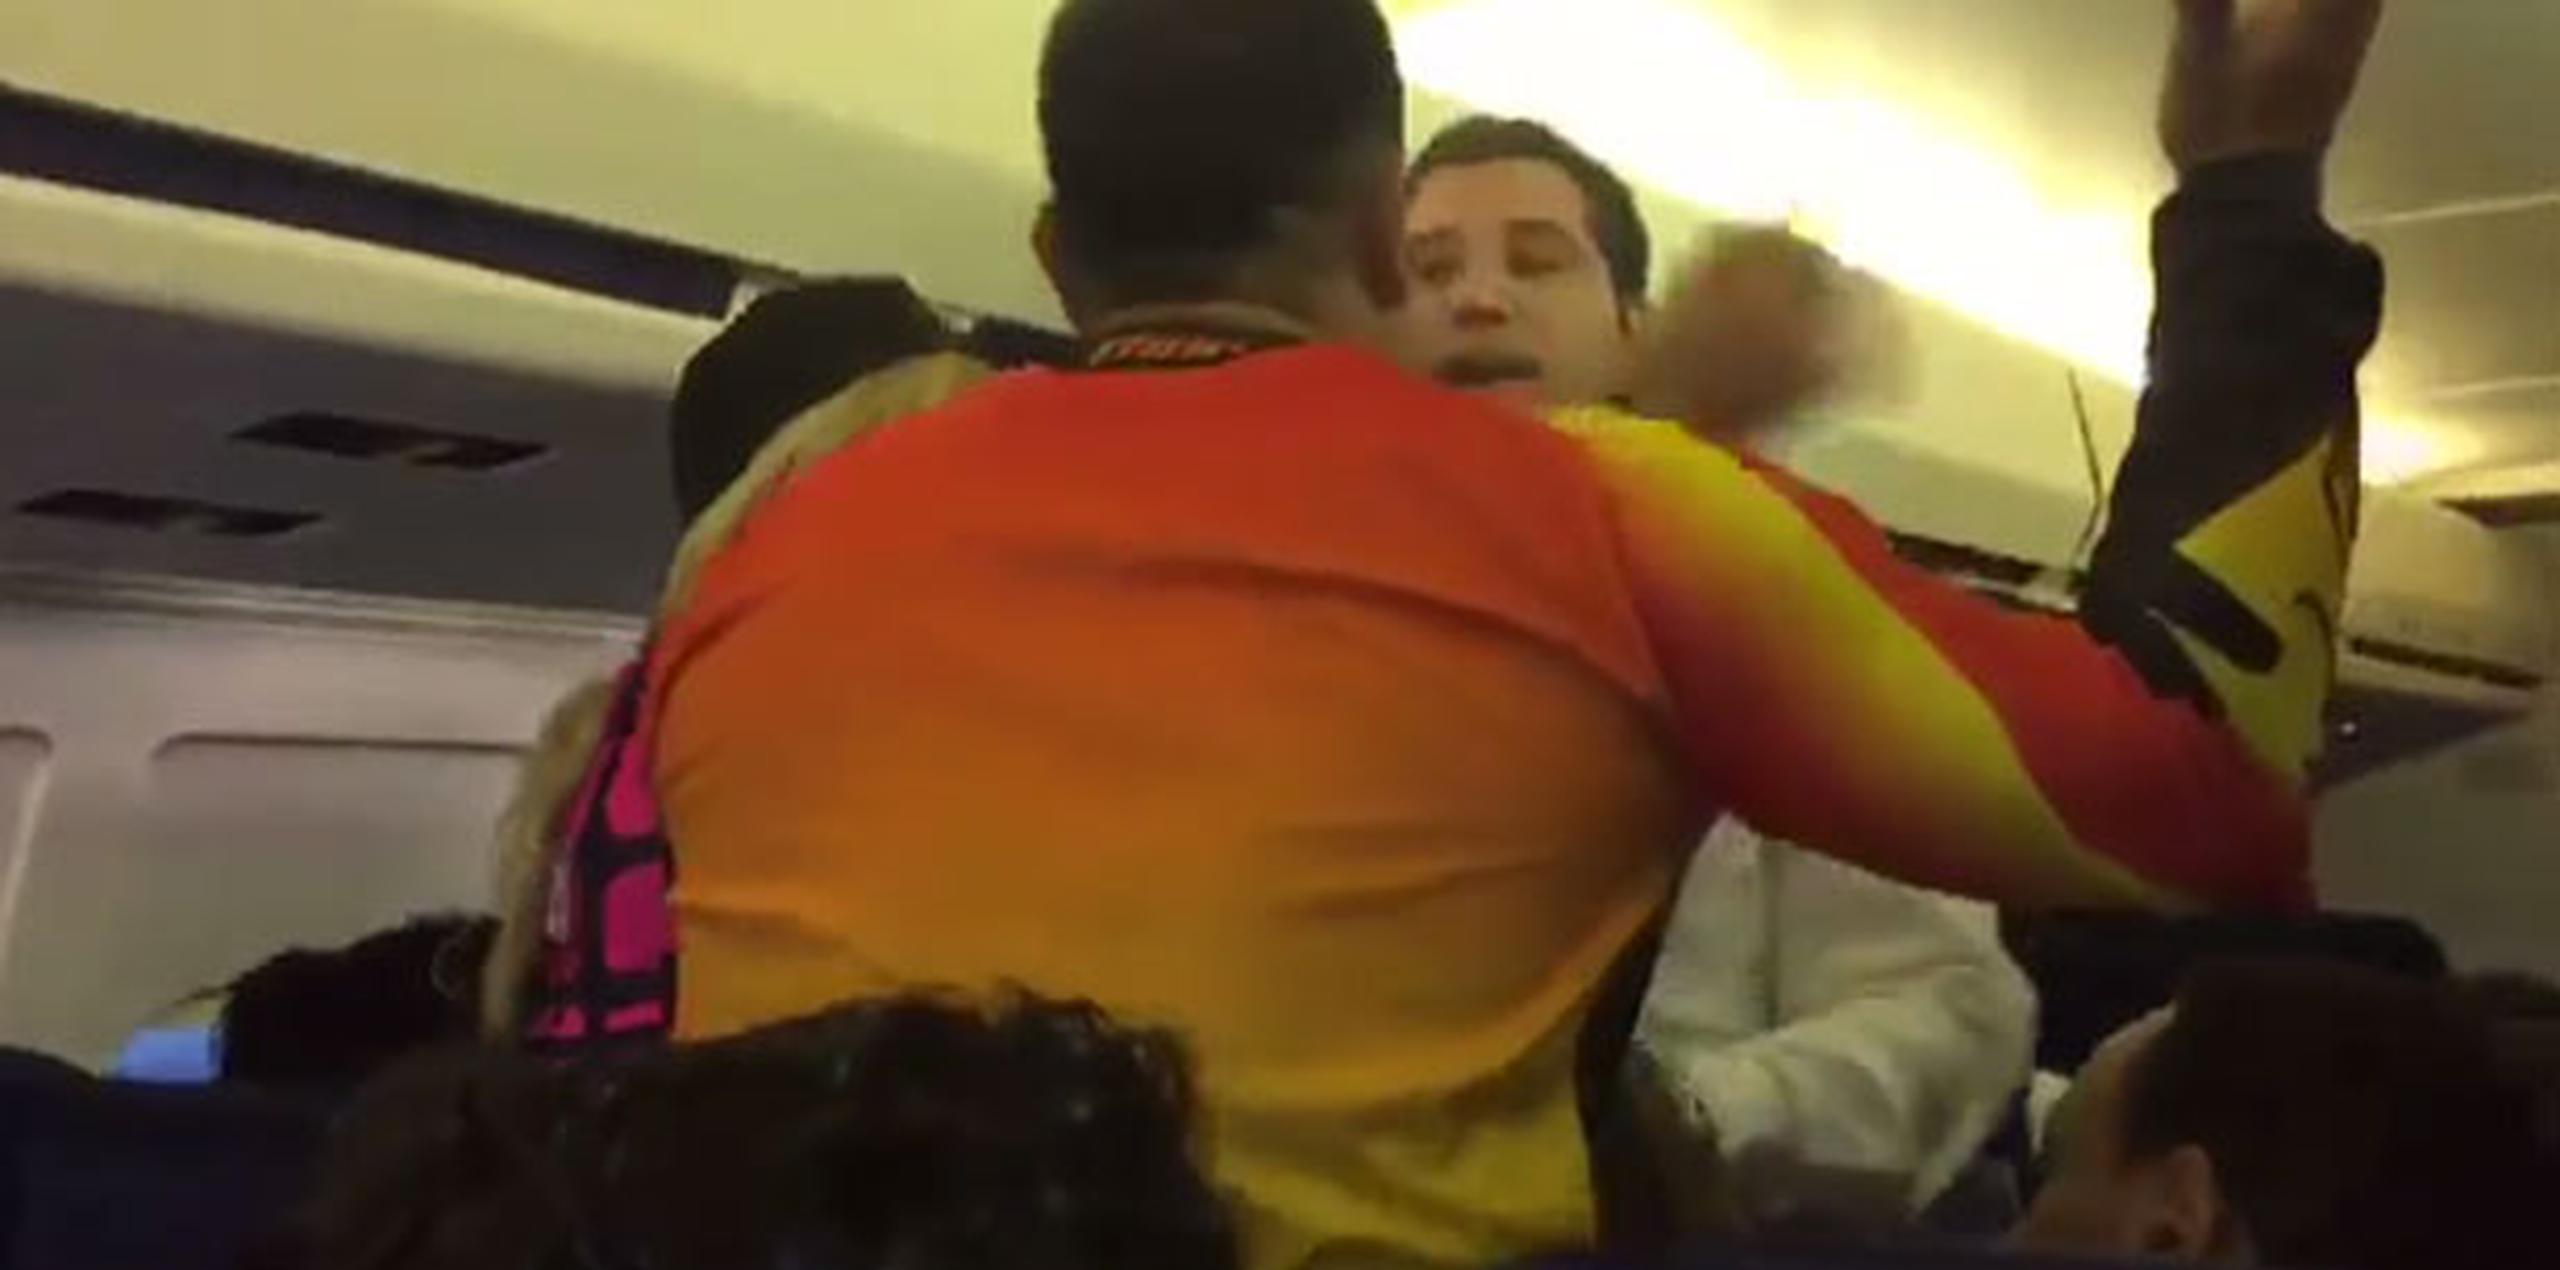 En un vídeo difundido a través de las redas sociales, se observa el descontrol de los pasajeros, al punto que uno de ellos intentó agredir a un miembro de la tripulación.